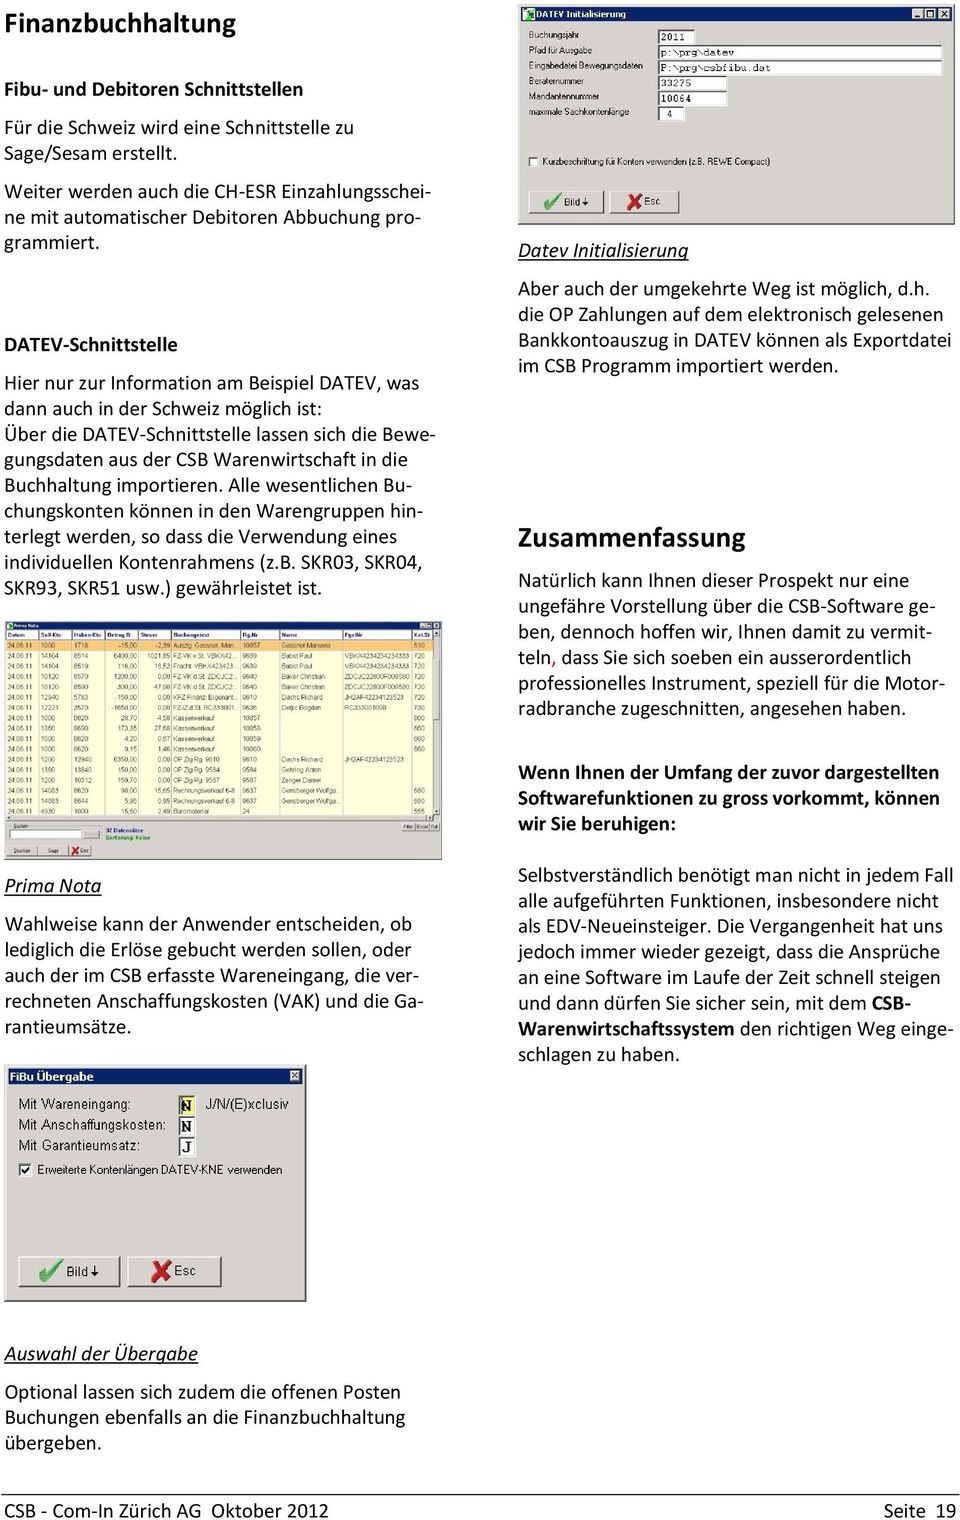 DATEV-Schnittstelle Hier nur zur Information am Beispiel DATEV, was dann auch in der Schweiz möglich ist: Über die DATEV-Schnittstelle lassen sich die Bewegungsdaten aus der CSB Warenwirtschaft in